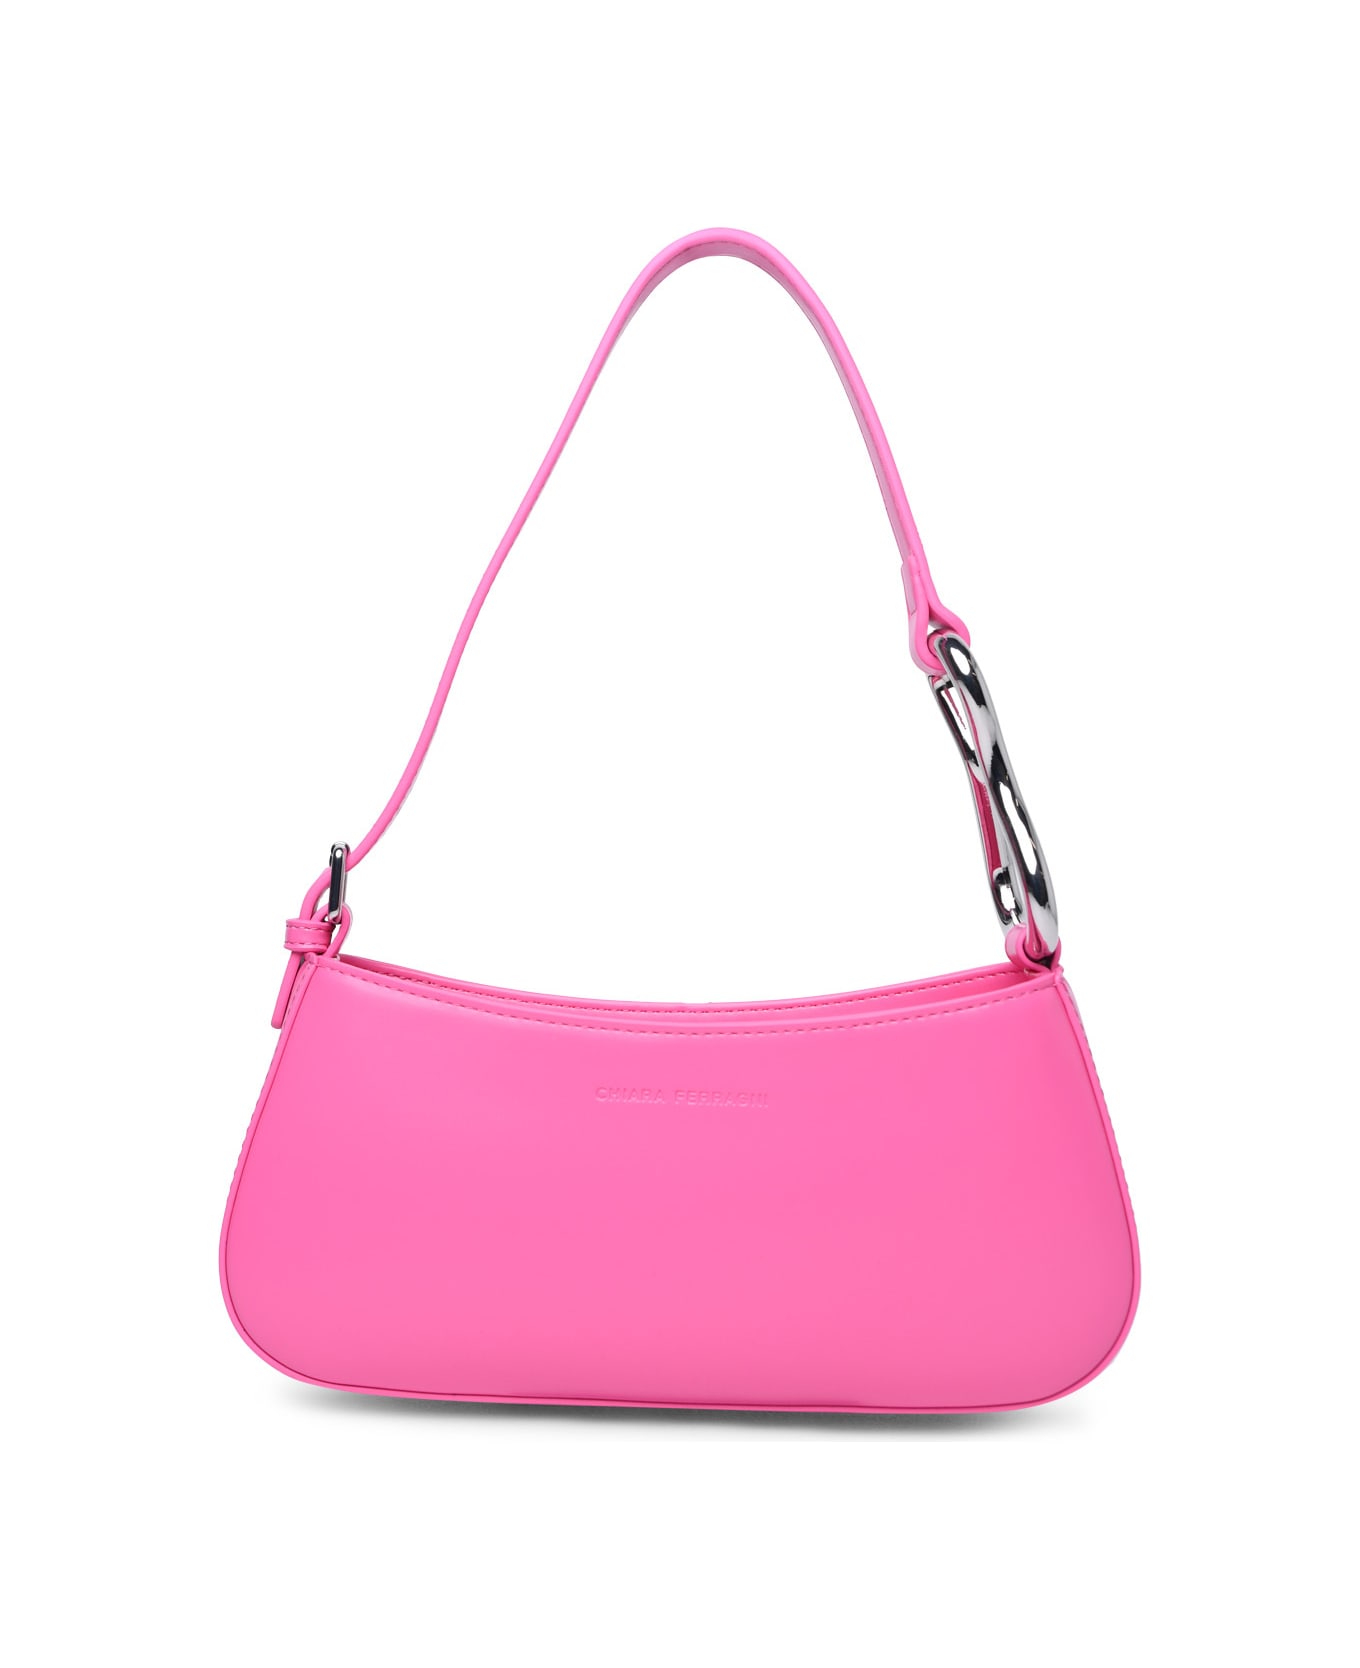 Chiara Ferragni 'cfloop' Pink Polyester Bag - Pink トートバッグ